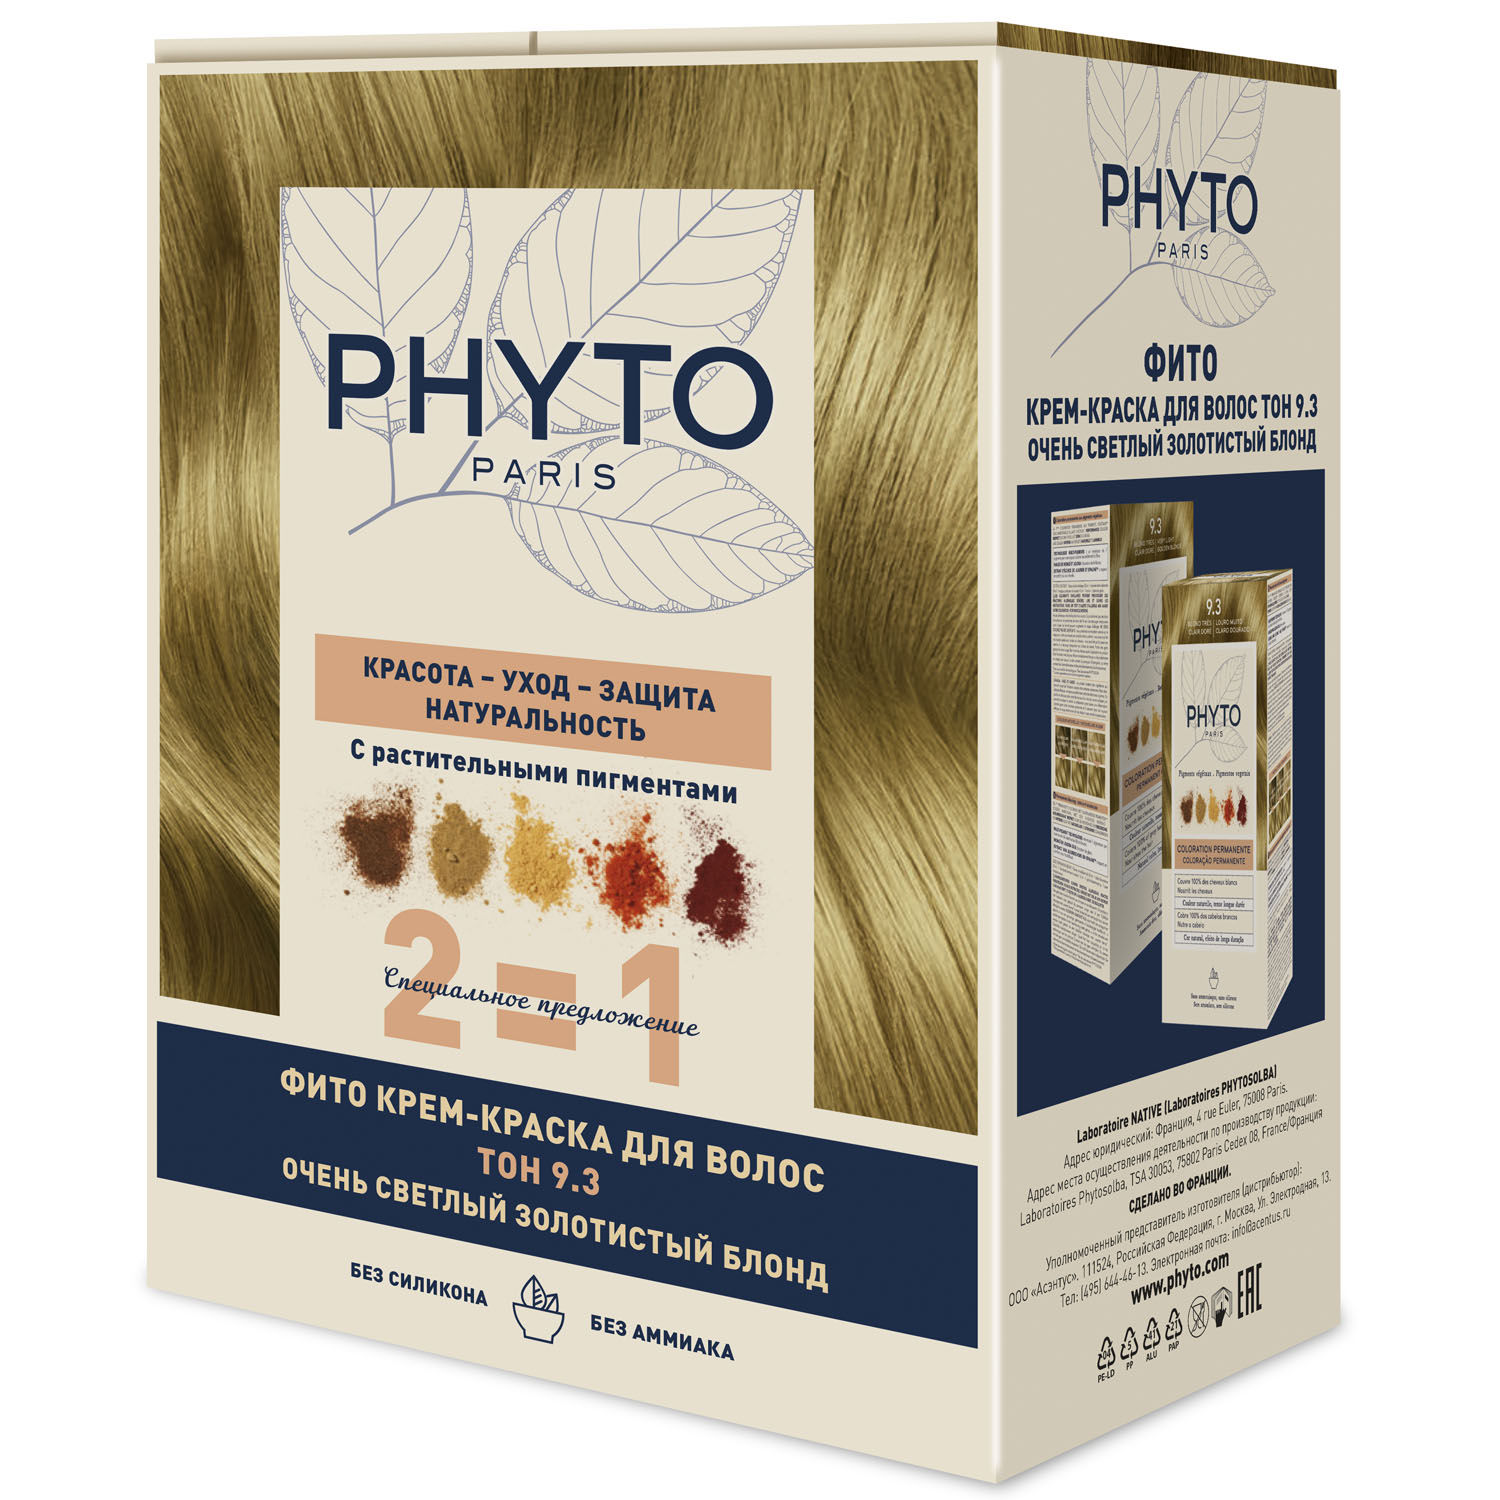 Phyto Крем-краска для волос тон 9.3 очень светлый золотистый блонд, 2 шт (Phyto, Phytocolor) цена и фото